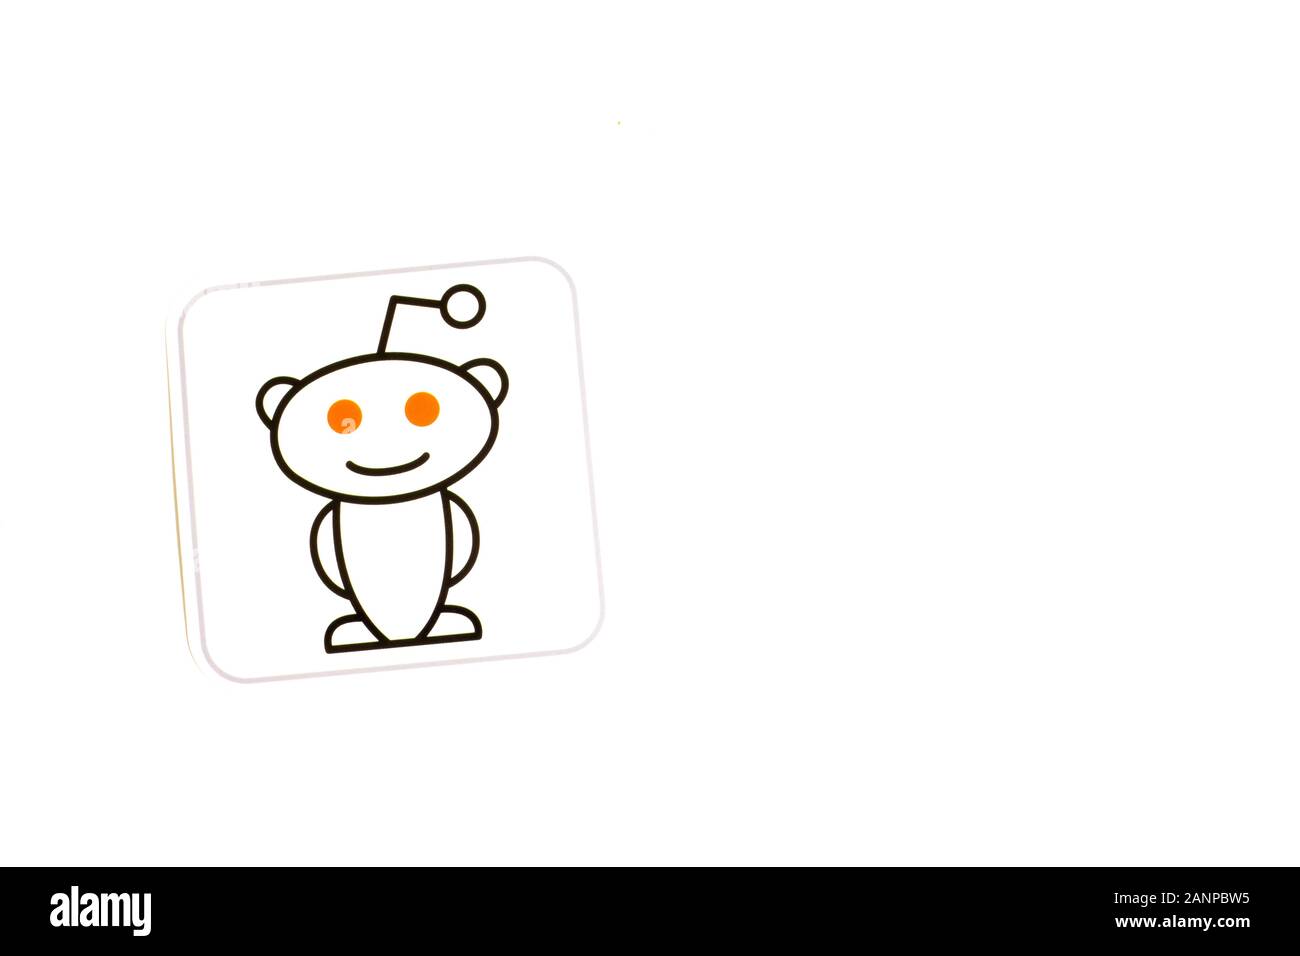 Los Angeles, Californie, États-Unis - 17 janvier 2020: Logo Reddit sur fond blanc avec espace de copie. Icône des médias sociaux, éditorial illustratif Banque D'Images